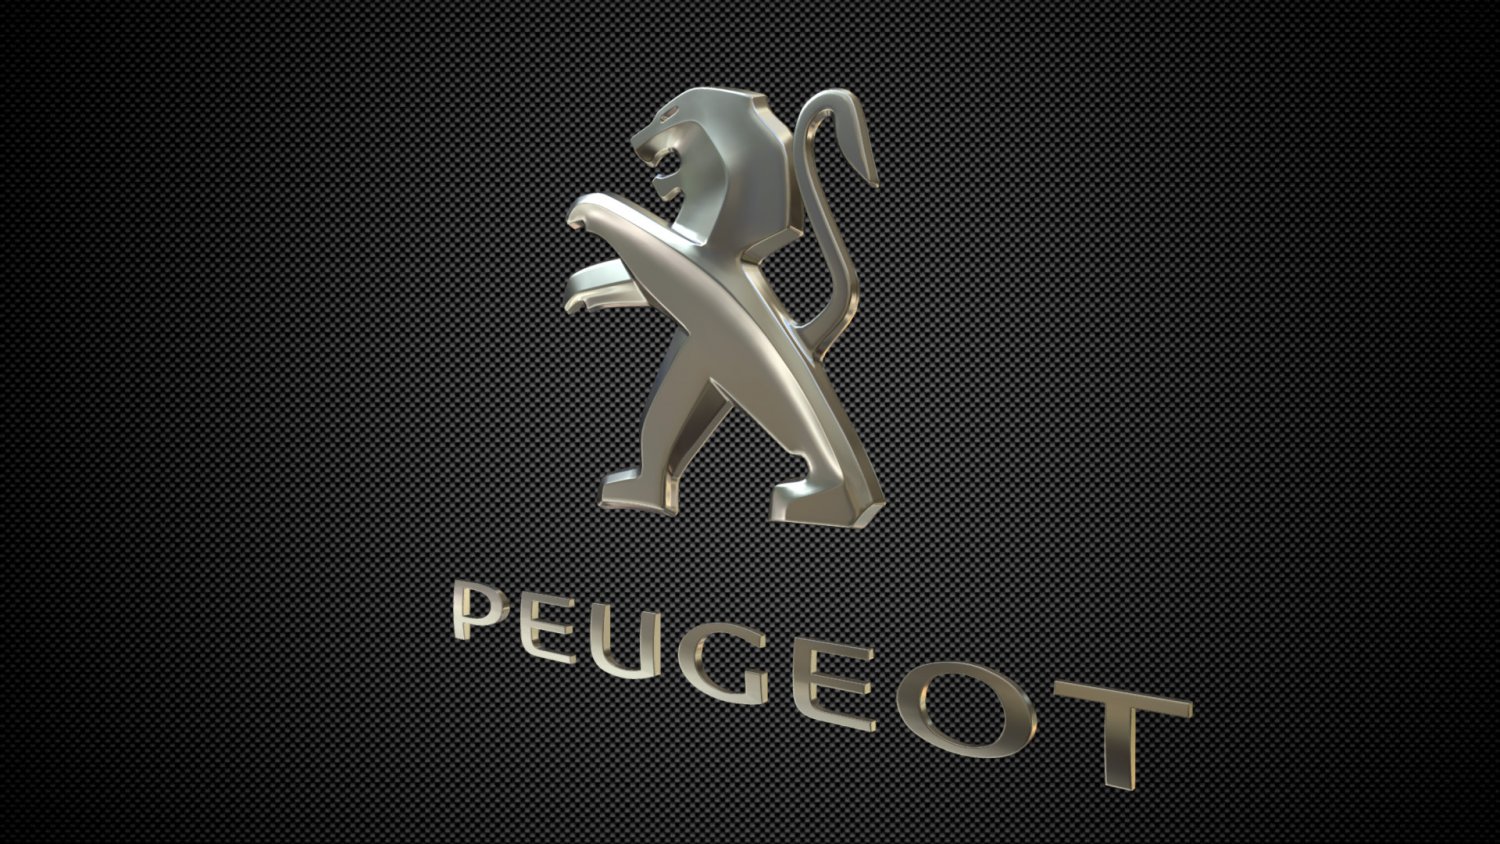 Peugeot log��